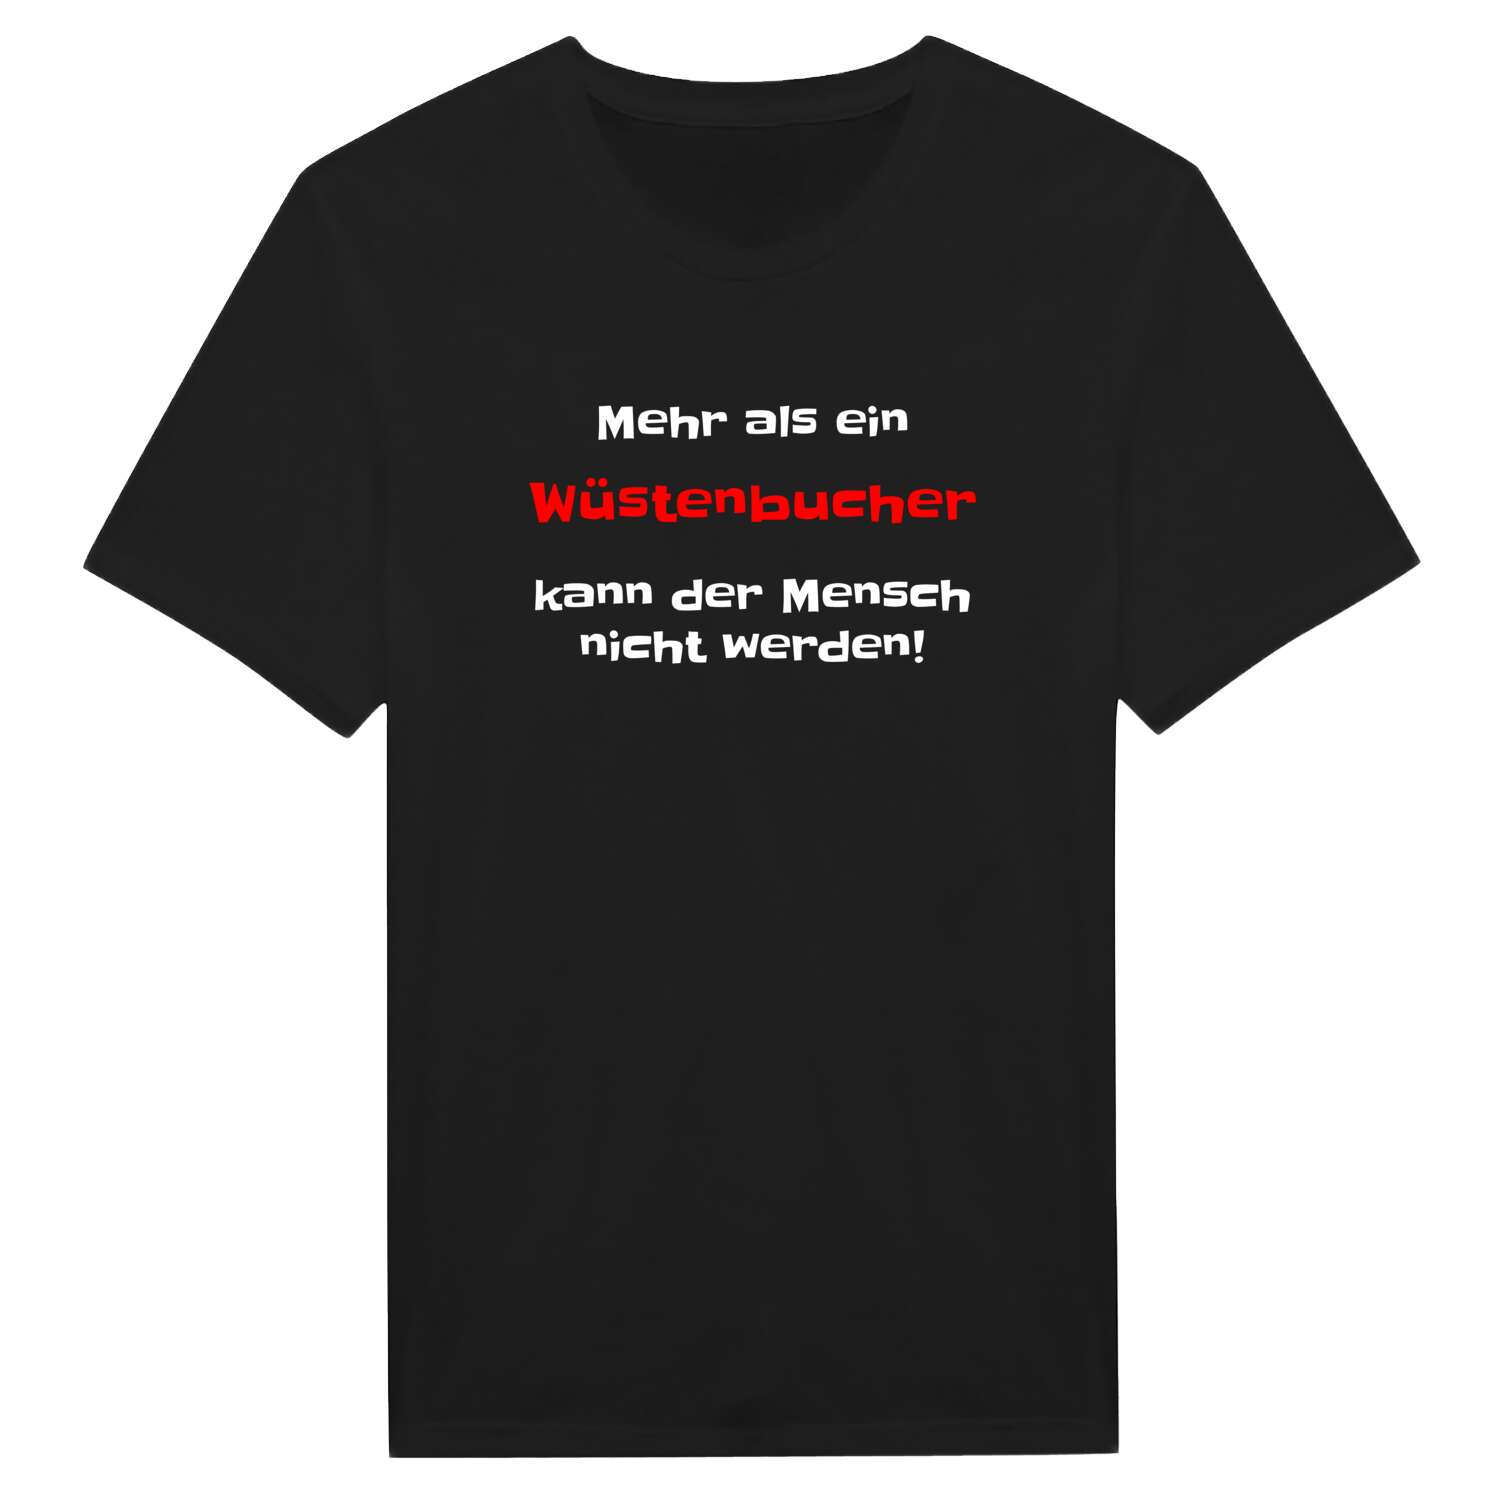 Wüstenbuch T-Shirt »Mehr als ein«